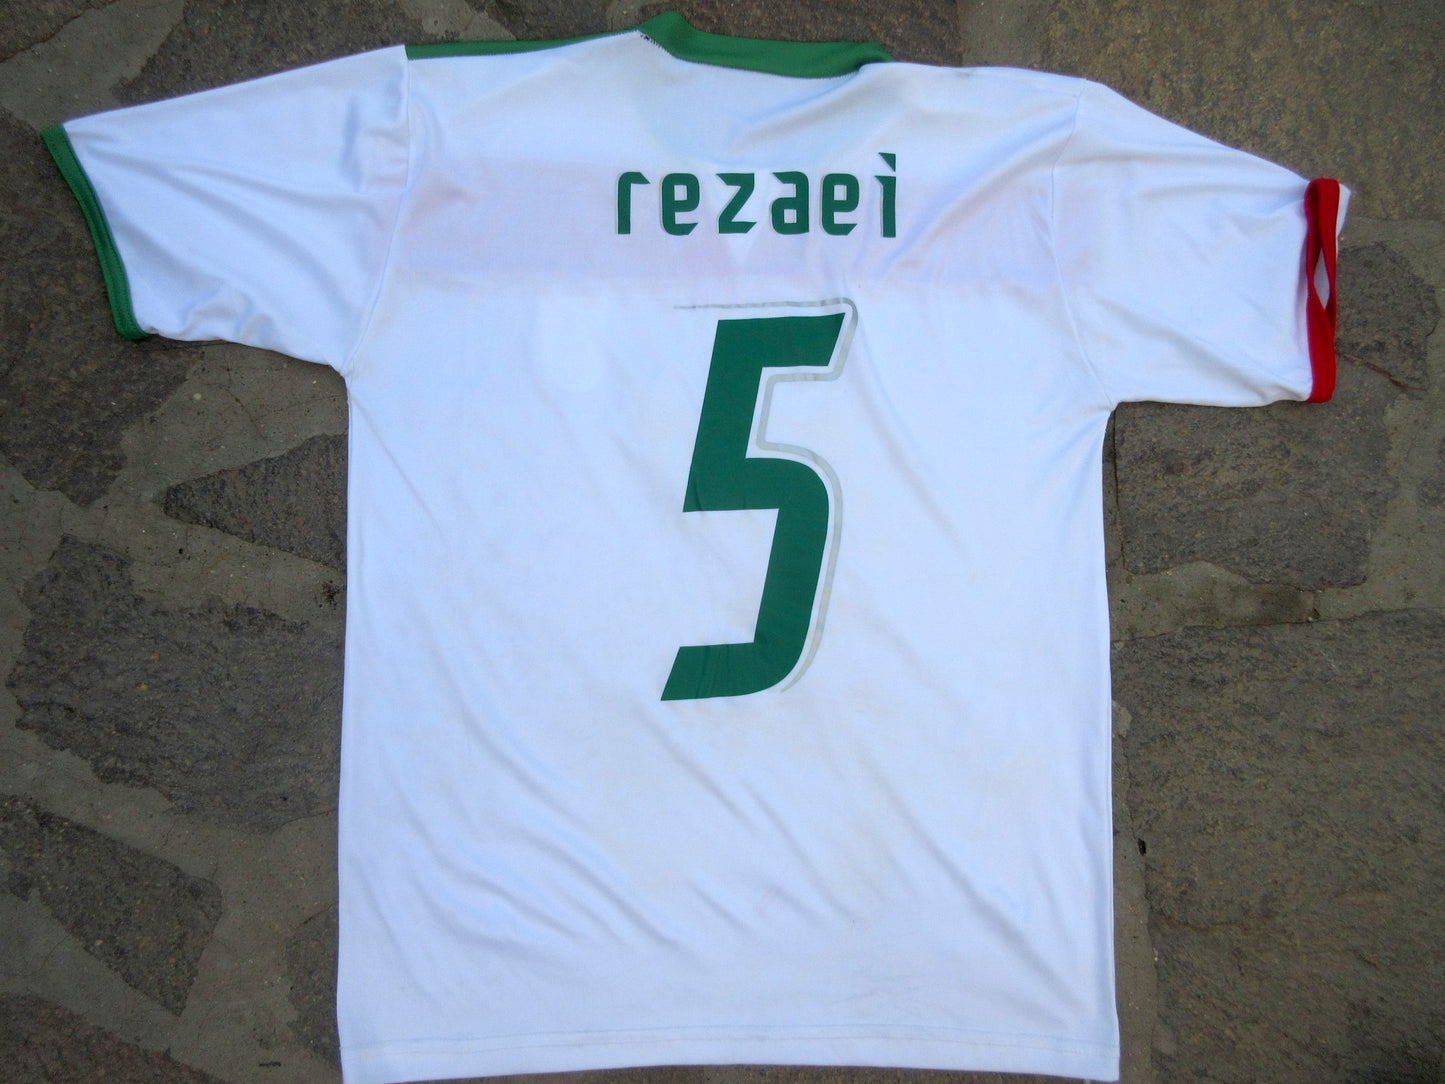 IRAN, maglia da calcio, replica.